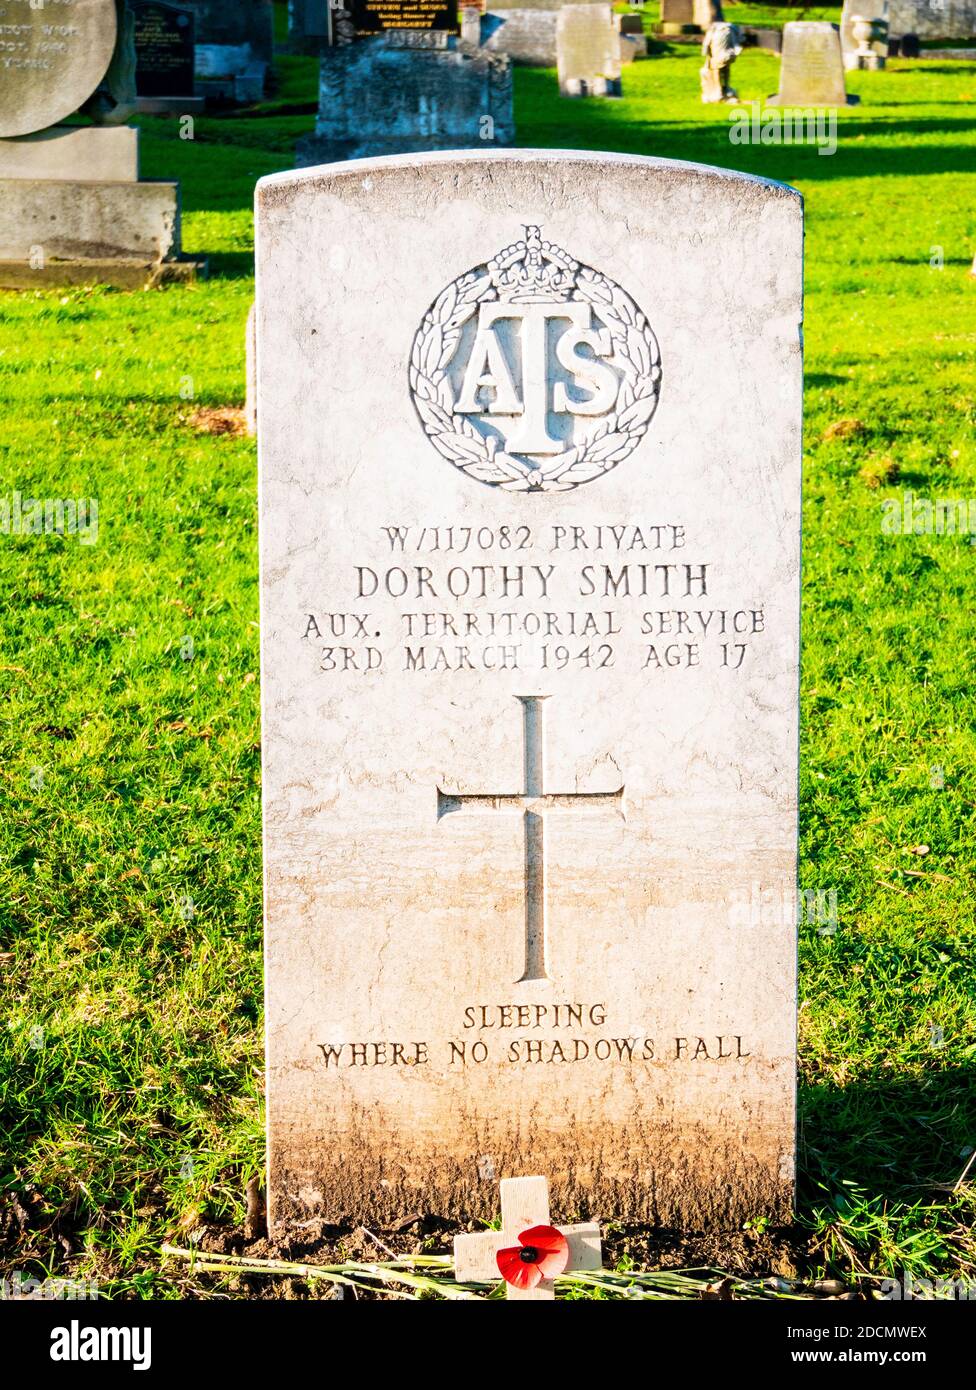 Dans le cimetière de Redcar pierre tombale pour la privée Dorothy Smith de la La Force territoriale auxiliaire est décédée le 3 mars 1942 à l'âge de 17 ans Banque D'Images